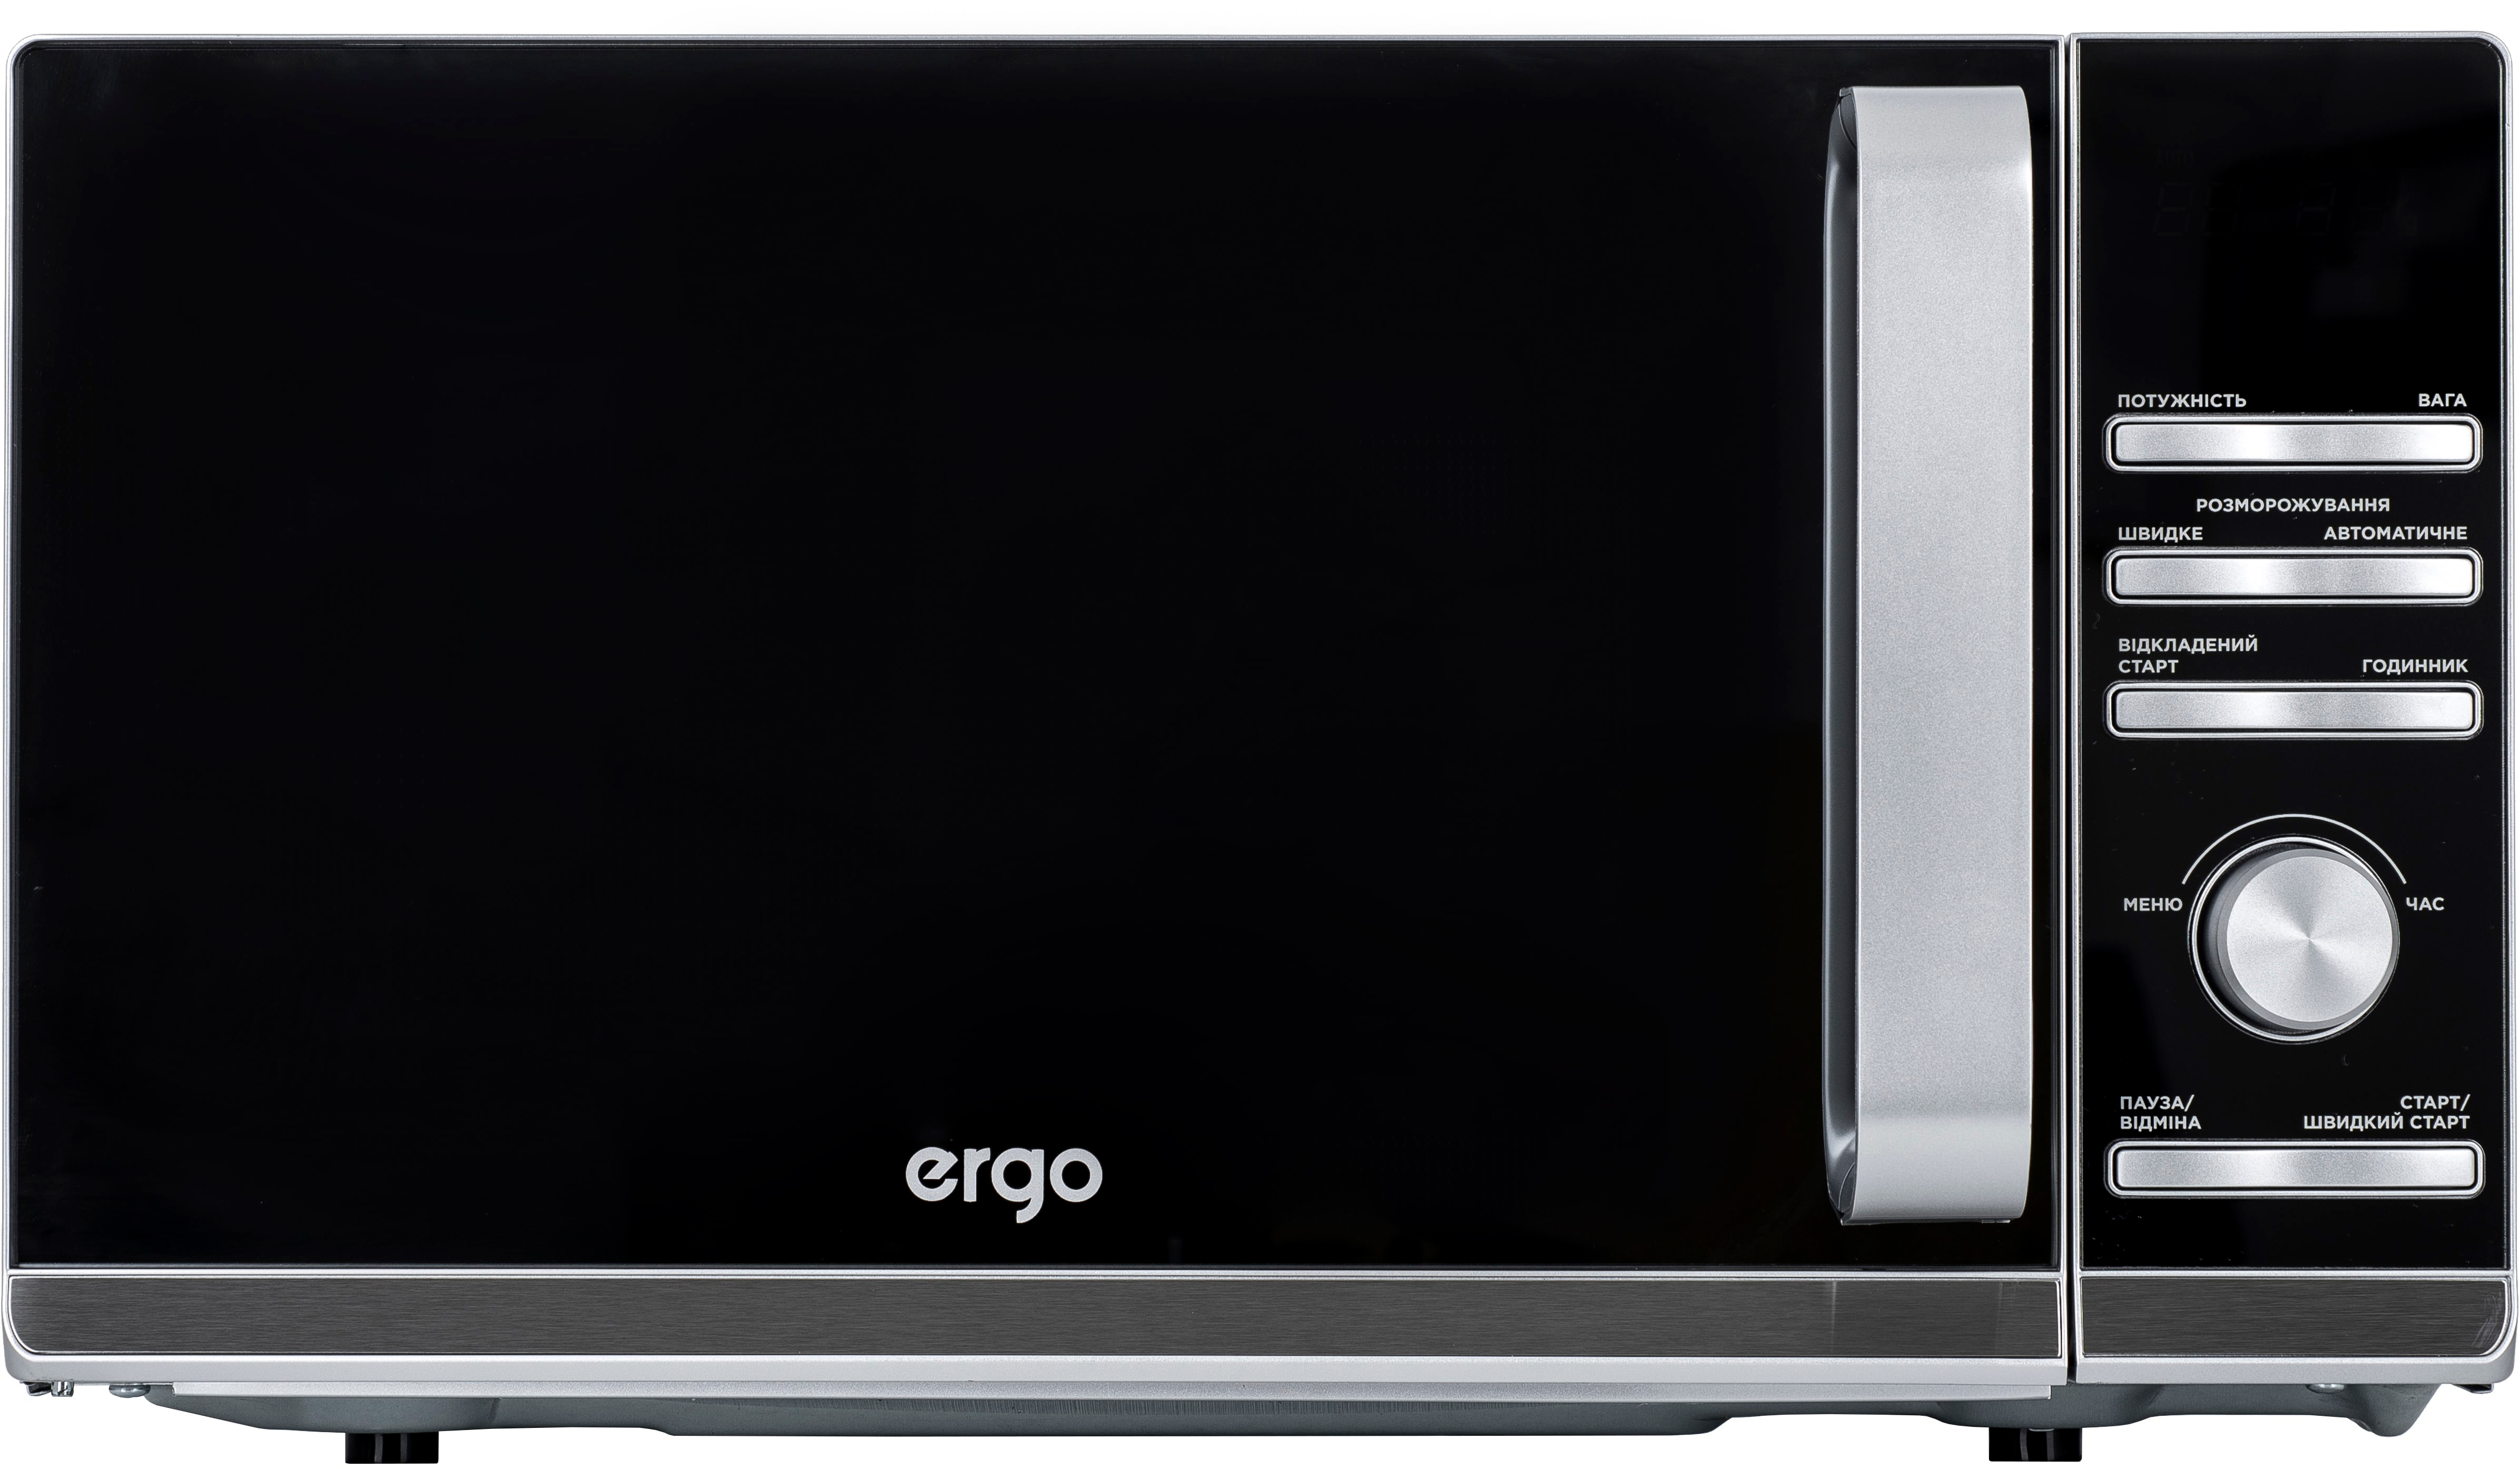 Купить микроволновая печь Ergo EM-2055 в Херсоне